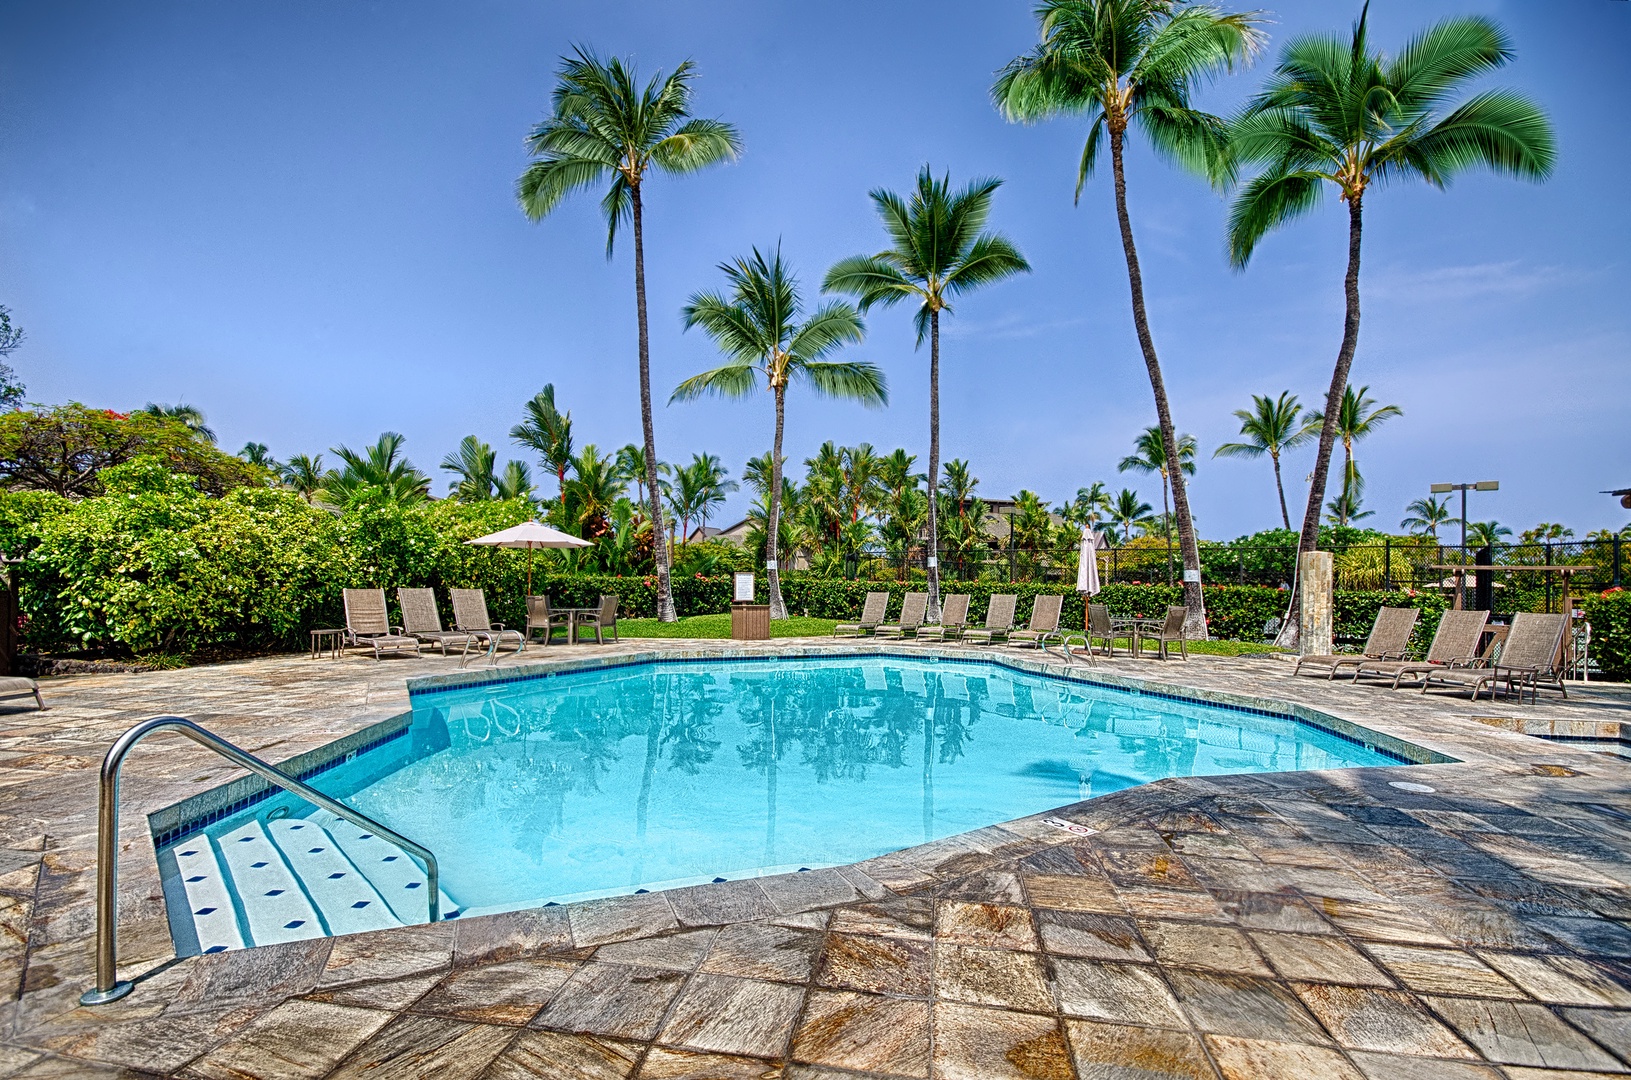 Kailua Kona Vacation Rentals, Kanaloa 701 - One of three pools